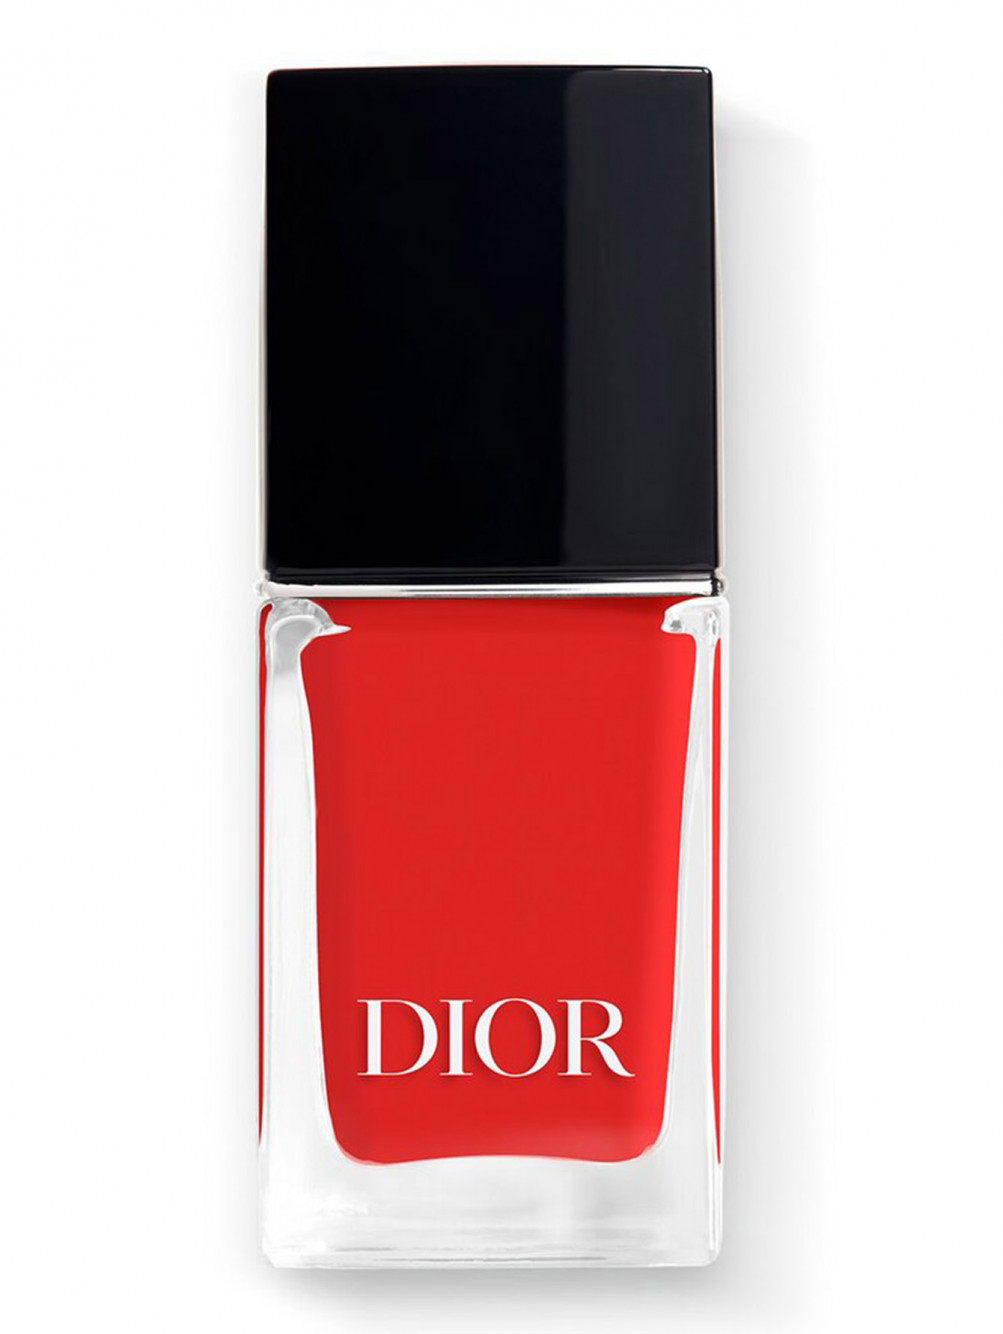 Лак для ногтей с эффектом гелевого покрытия Dior Vernis, 080 Красная Улыбка, 10 мл - Общий вид